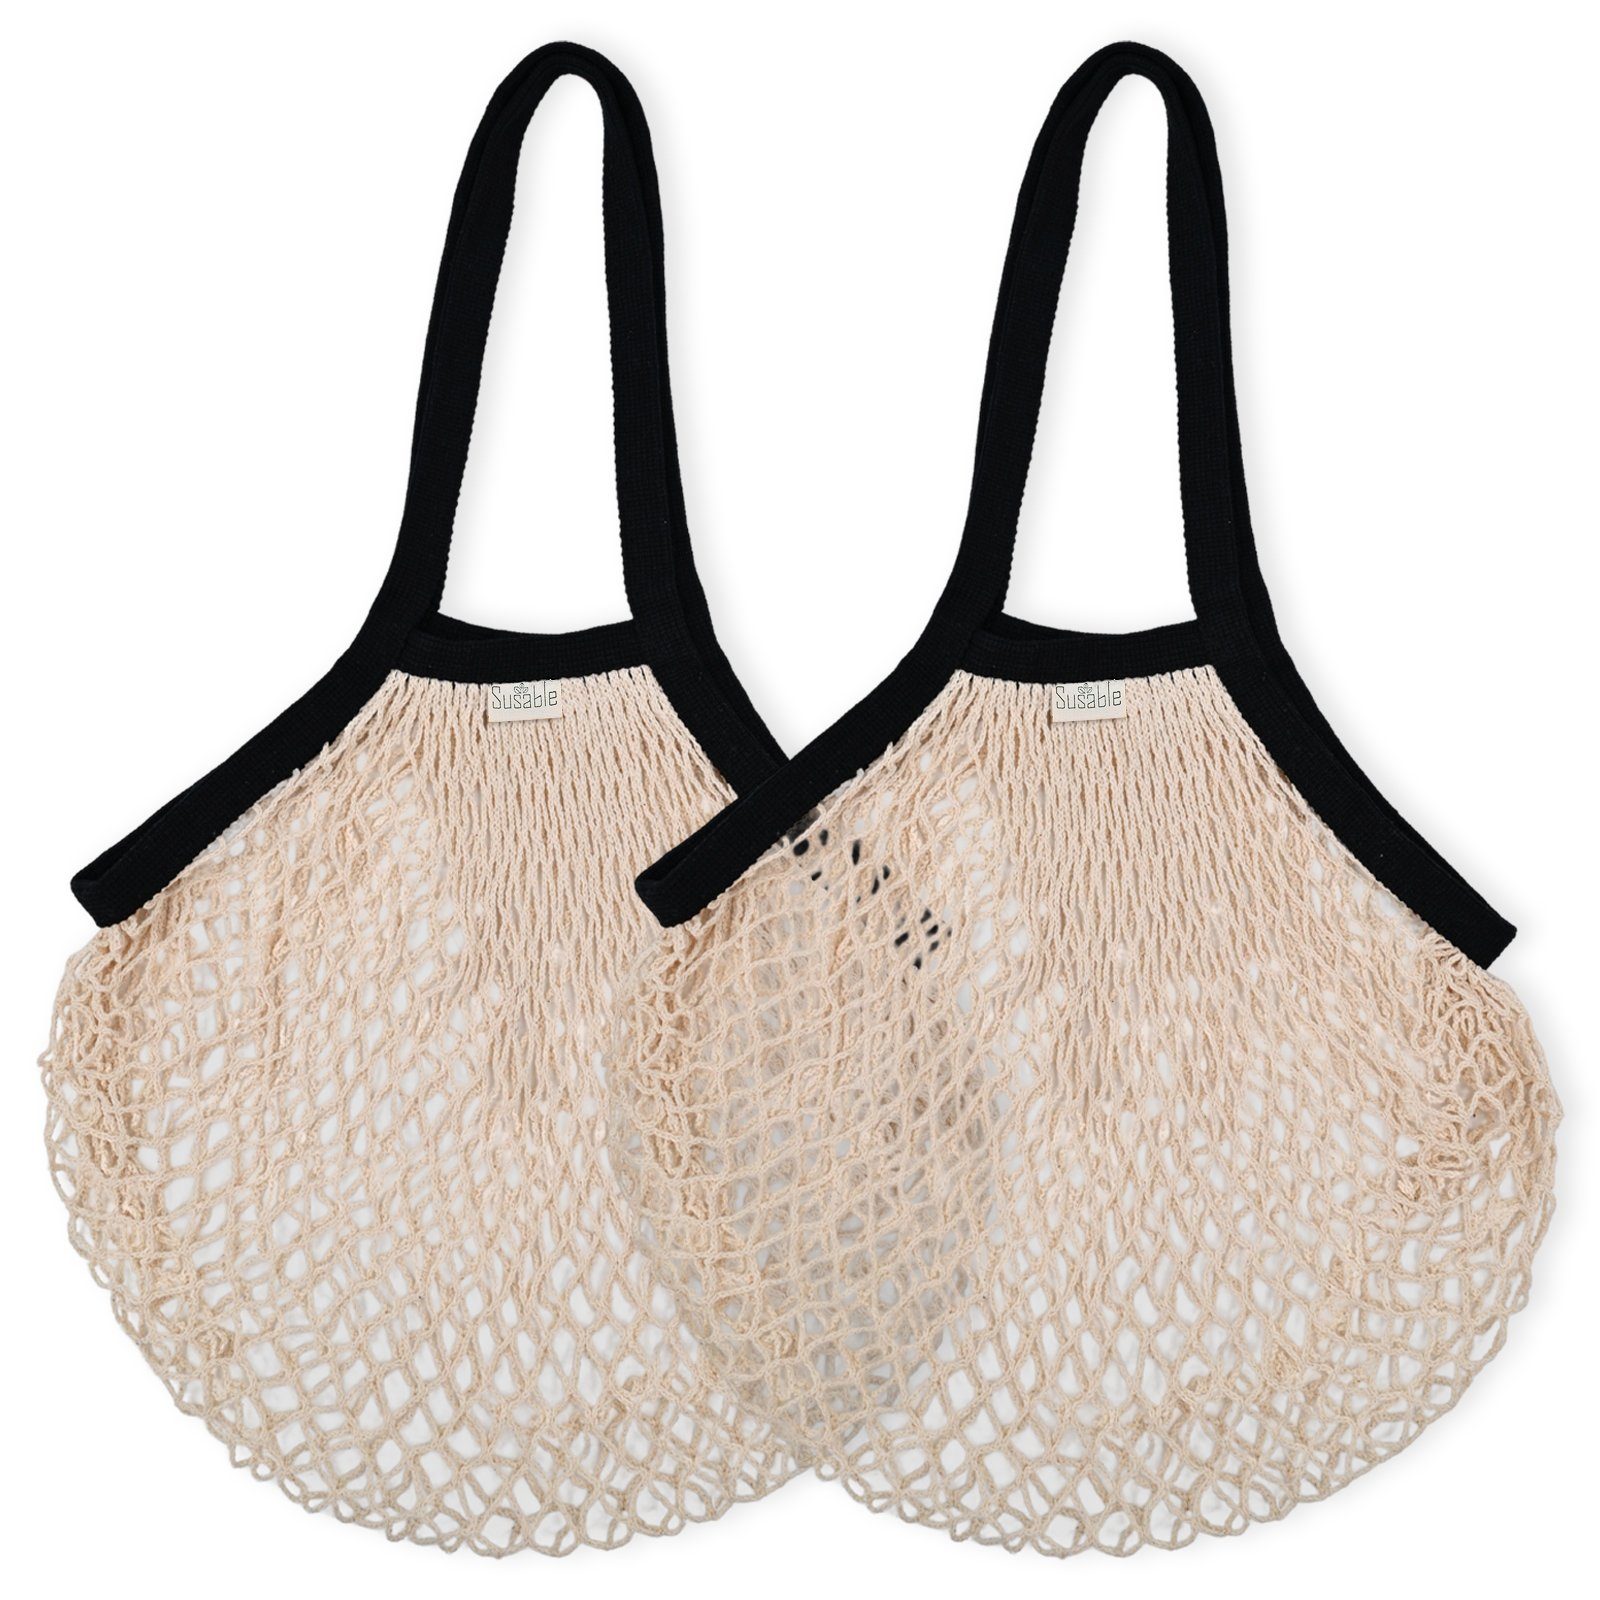 Susable Schultertasche Vielseitige Netztasche Bio-Baumwolle aus Einkaufstasche – 2er-set